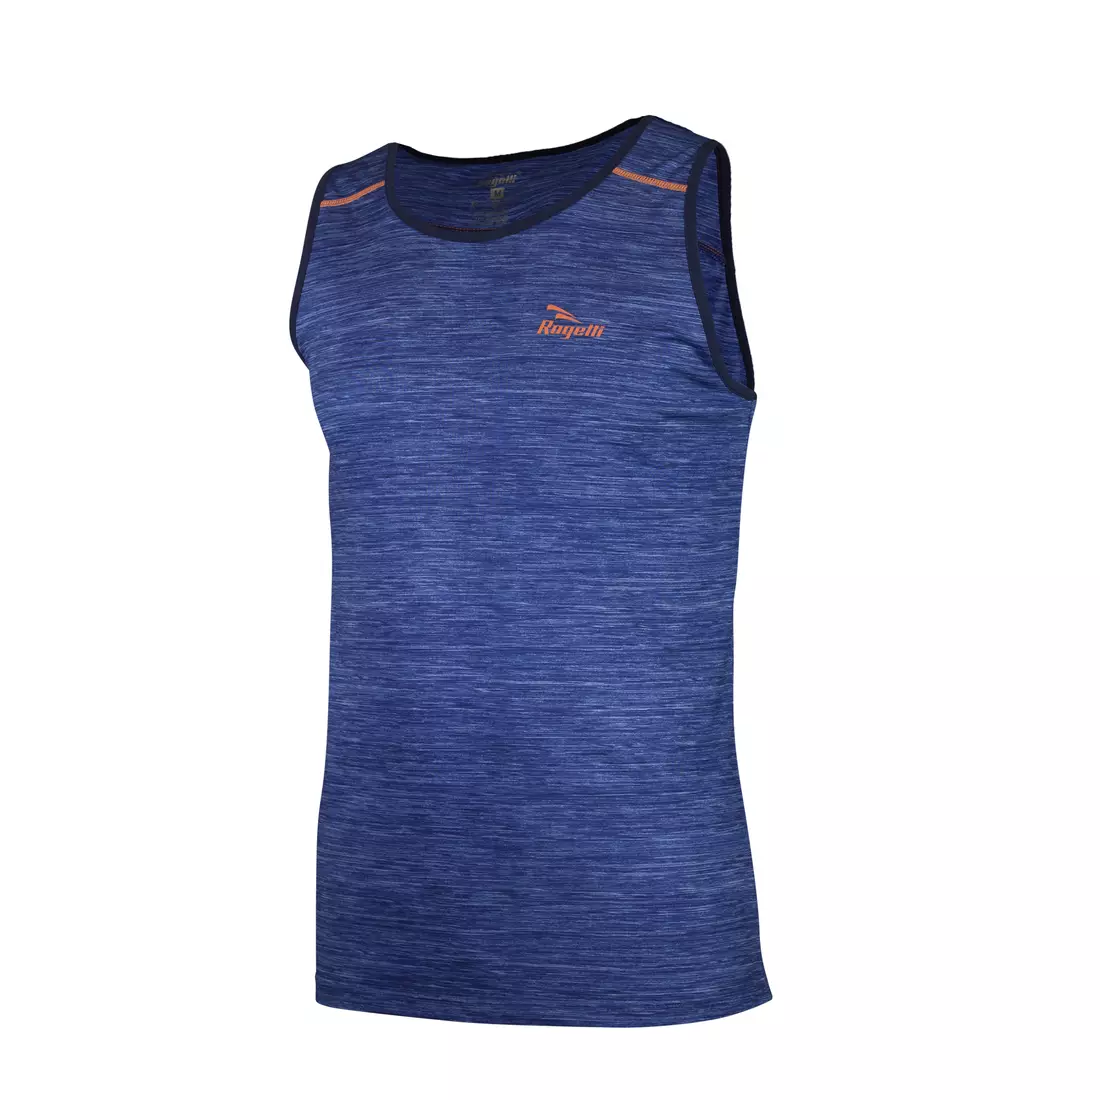 ROGELLI RUN STRUCTURE 830.241 - pánske tričko, bežecká vesta, modrej a oranžovej farby